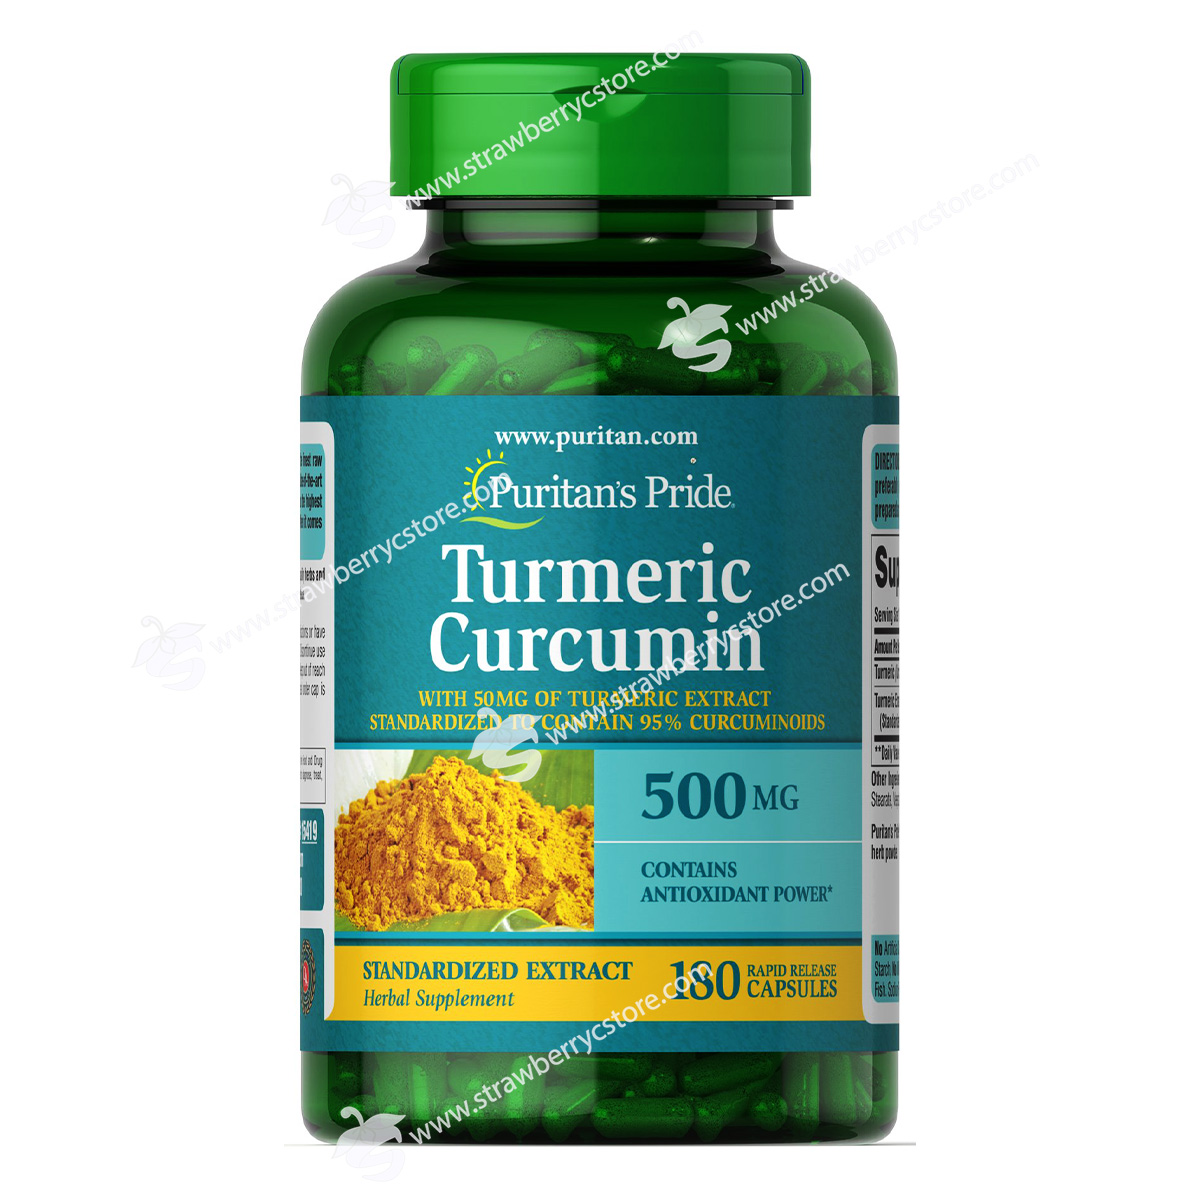 Viên Uống Tinh Chất Nghệ Puritan s Pride Turmeric Curcumin 500 mg